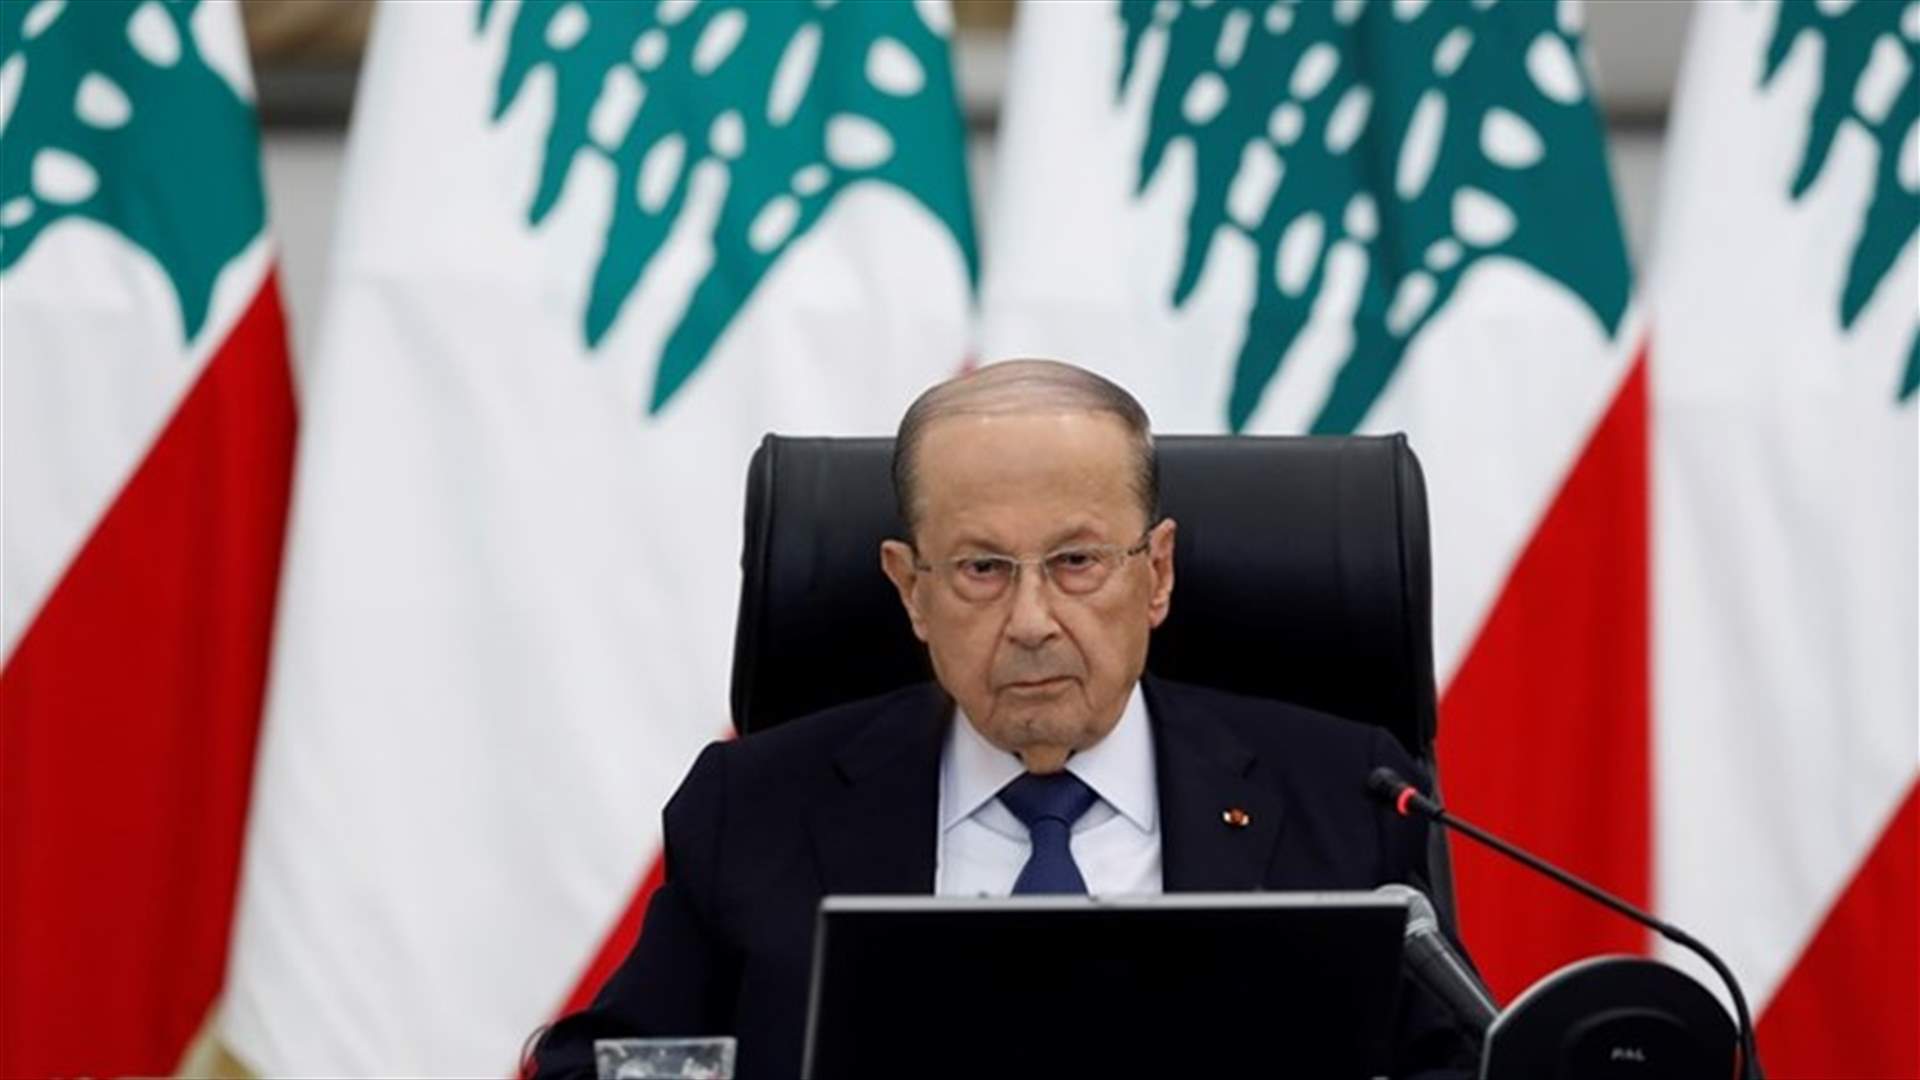 الرئيس عون: لبنان متمسك باليونيفيل وبالدور الايجابي الذي تلعبه